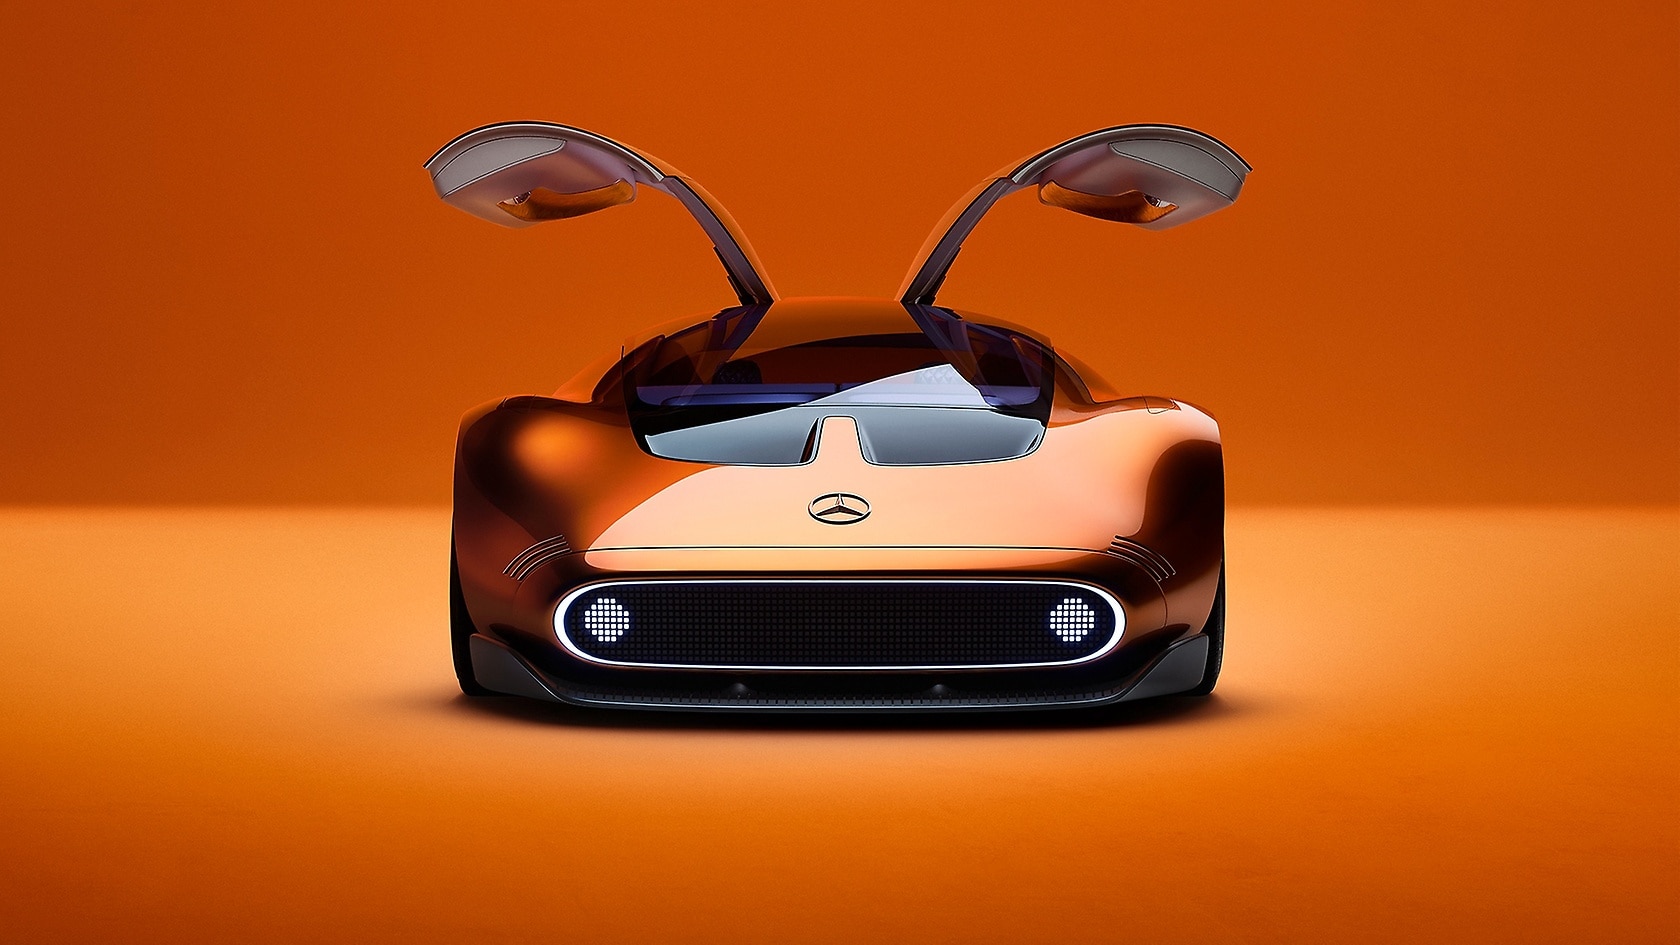 Die orange-schwarzen Flügeltüren machen den Sportwagen zu einer Design-Ikone.